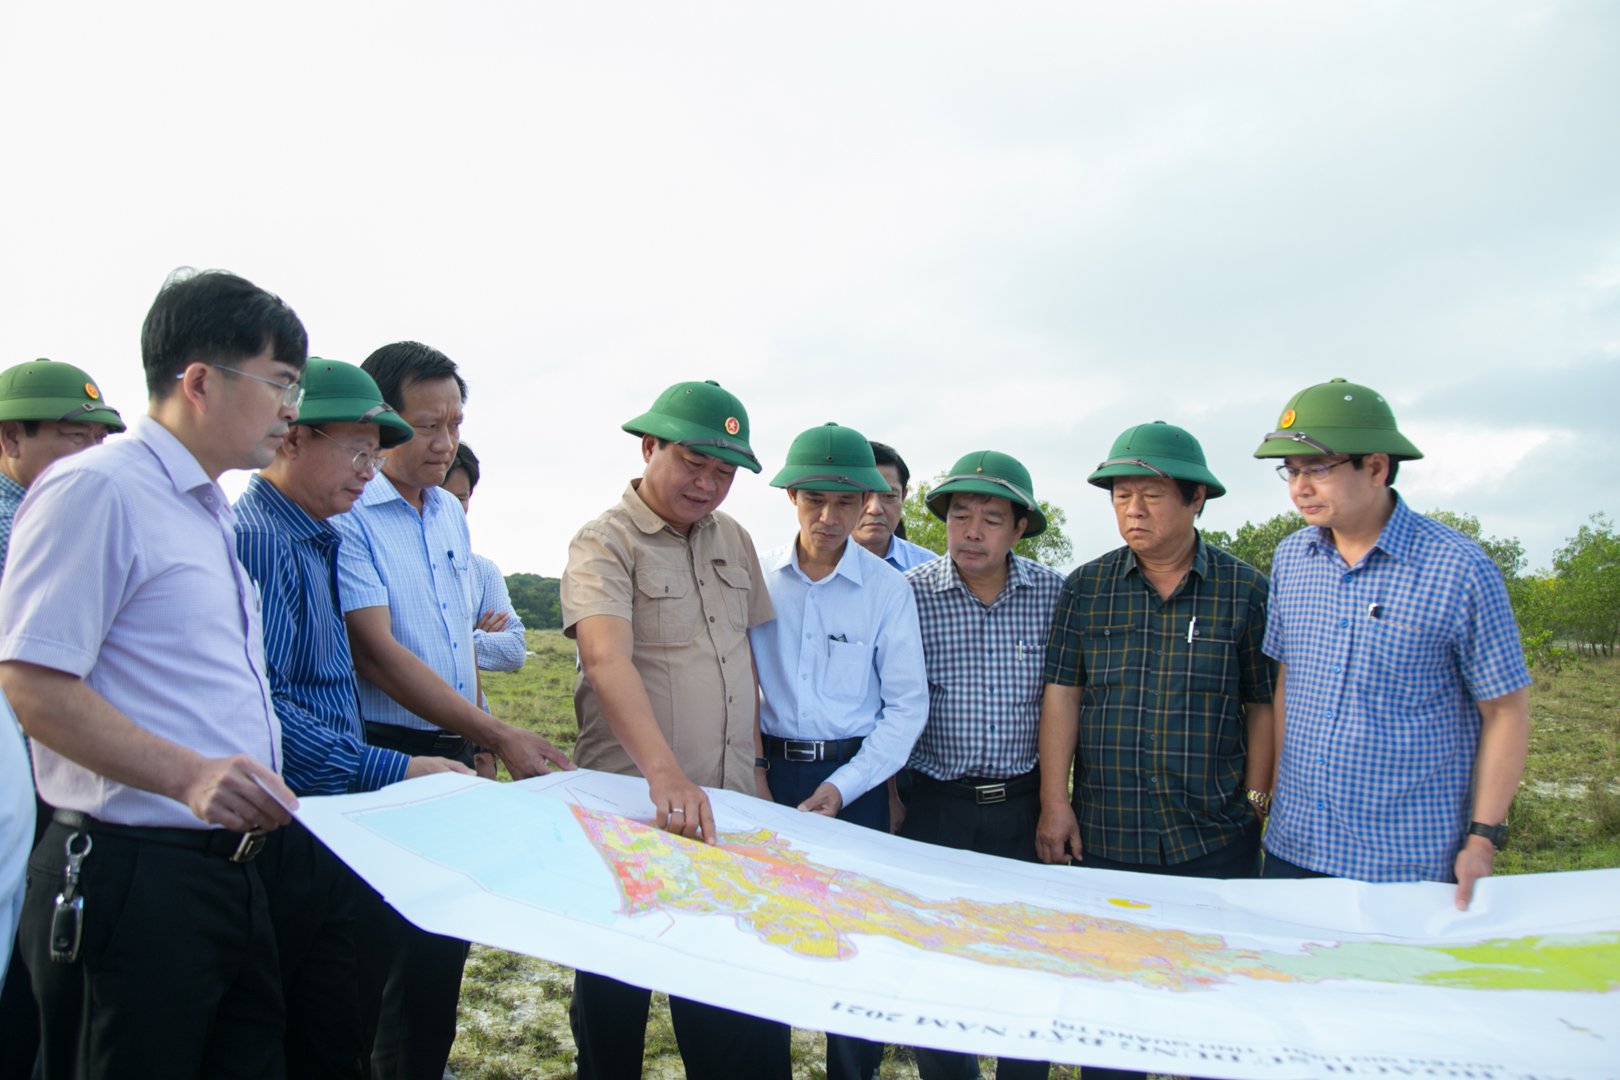 Chủ tịch UBND tỉnh Quảng Trị Võ Văn Hưng cùng đại diện các sở, ban, ngành và địa phương kiểm tra thực địa khu vực triển khai Dự án Cảng hàng không Quảng Trị